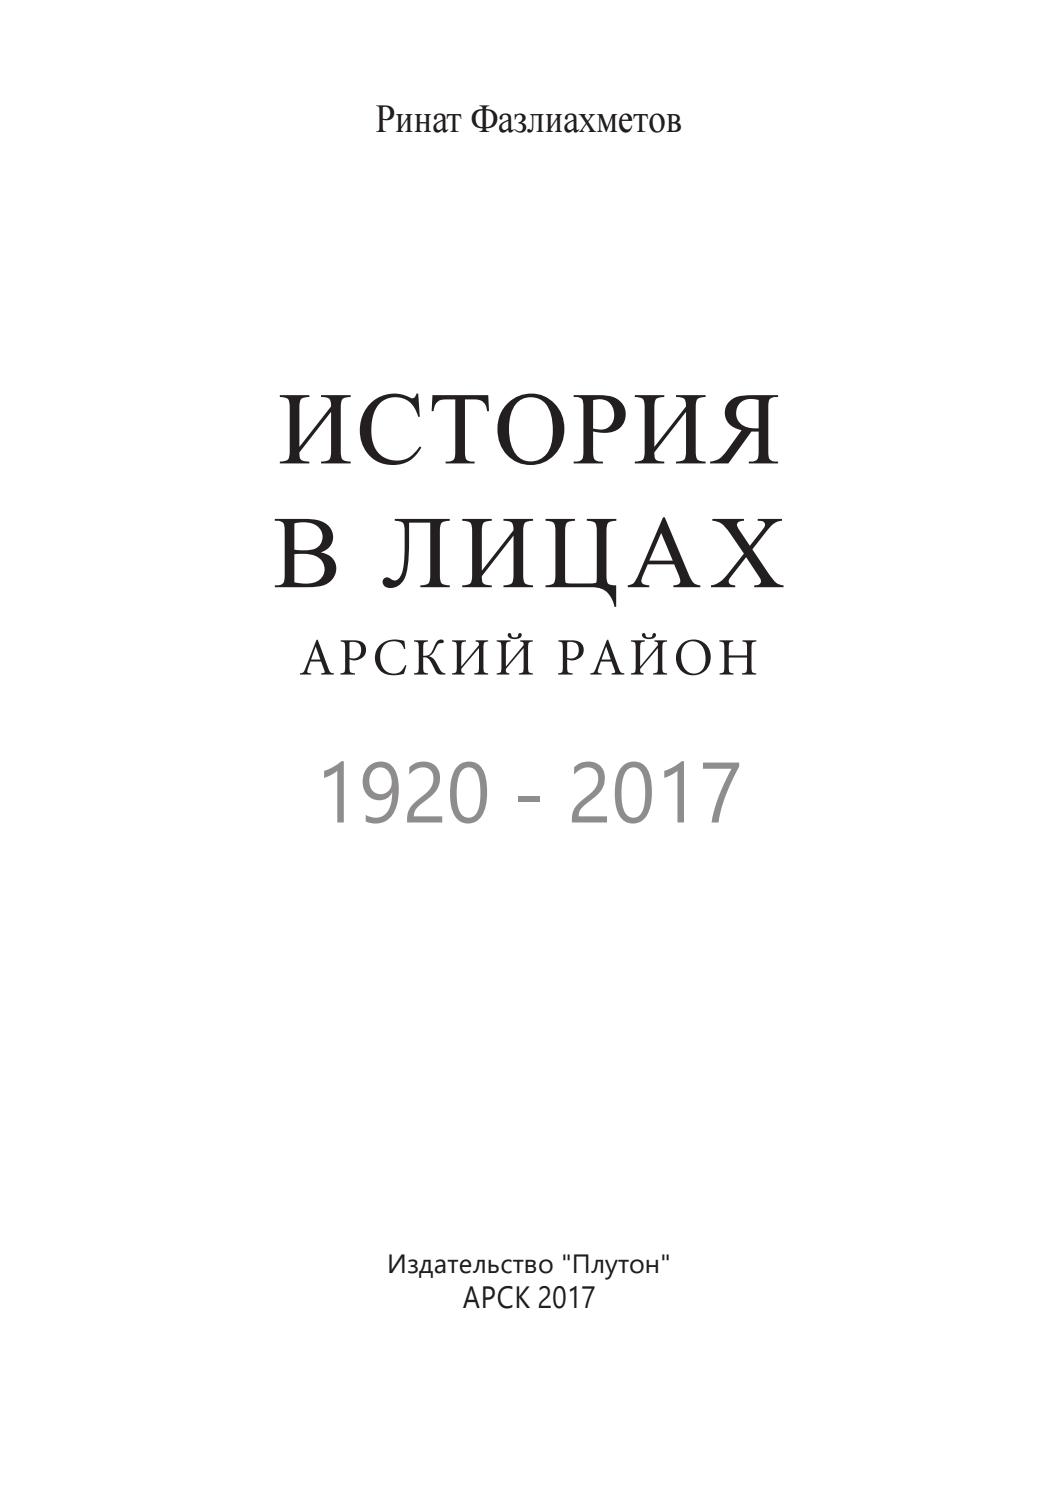   .  , 1920 - 2017, 2017,  